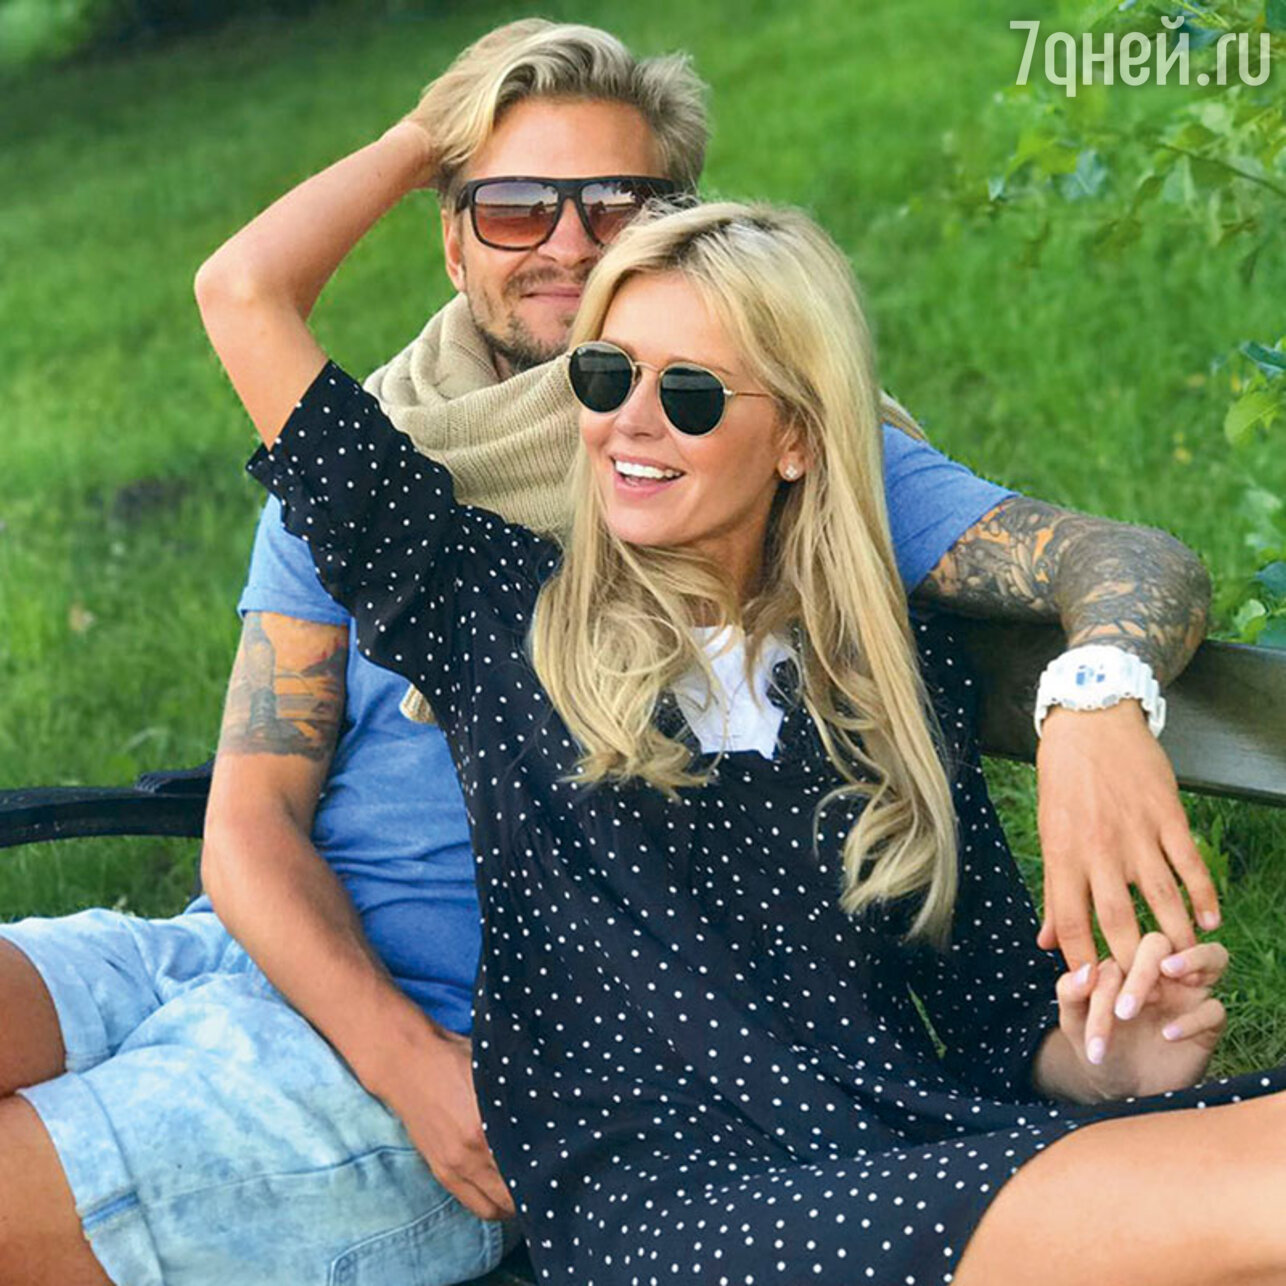 Екатерина Кузнецова рассказала, как разрушила две влюбленные пары - 7Дней.ру